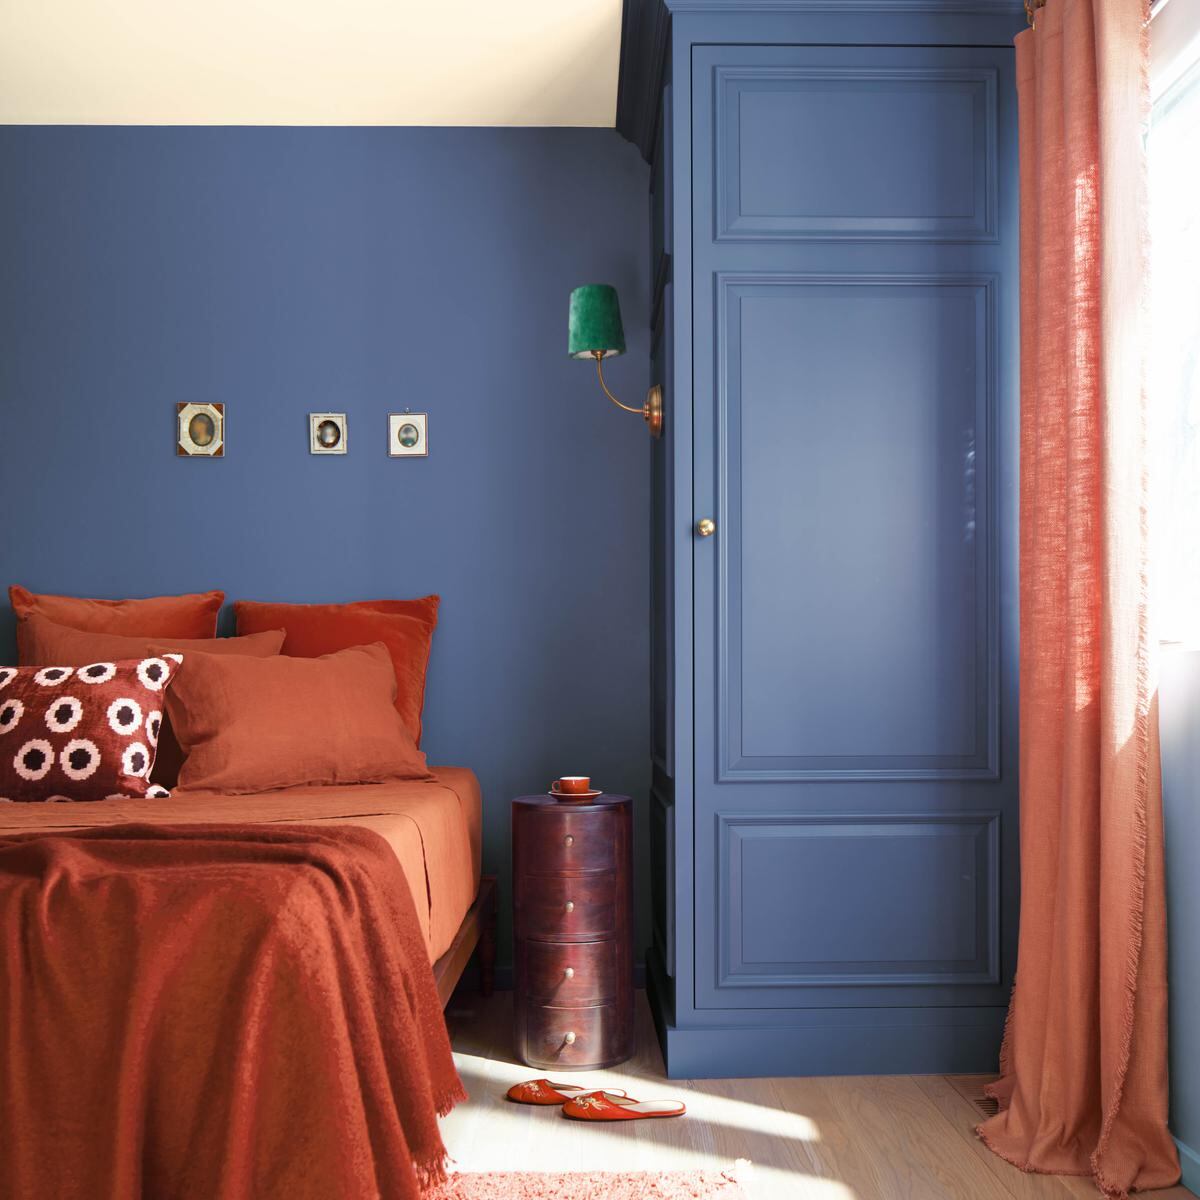 Psicología del color para pintar tu casa – mmatt